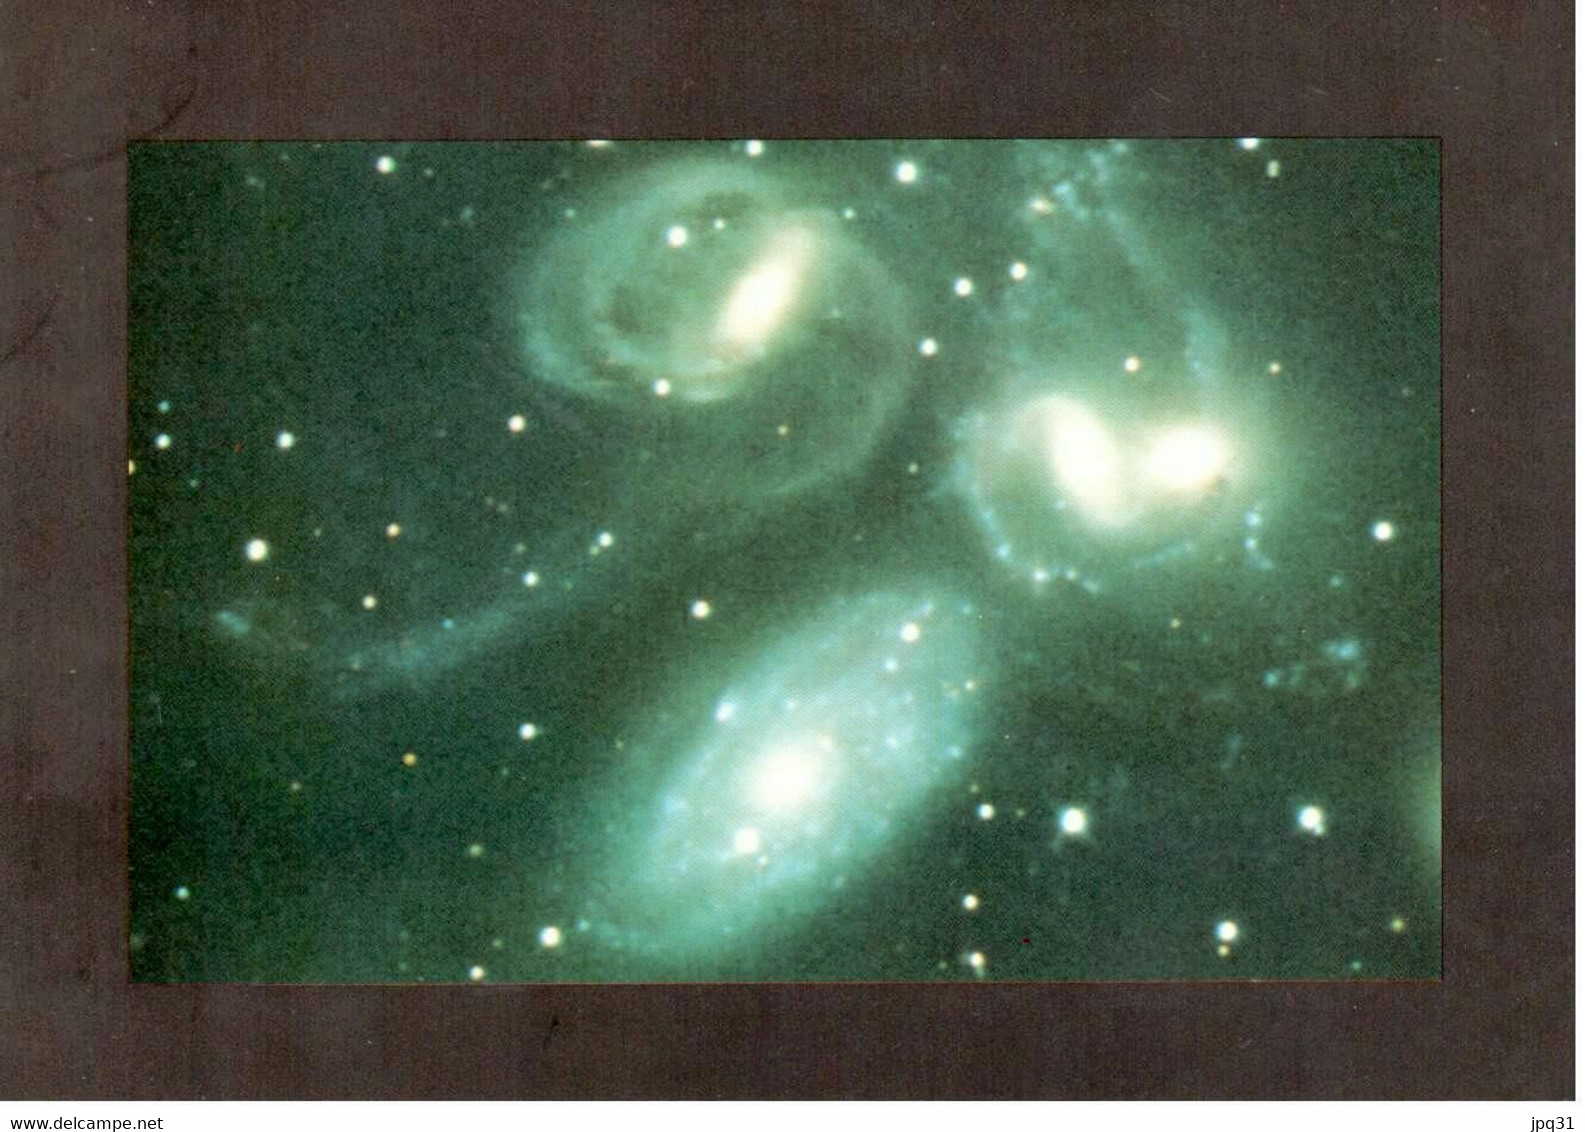 Série 12 CP Nébuleuses et galaxies - Ciel et Espace